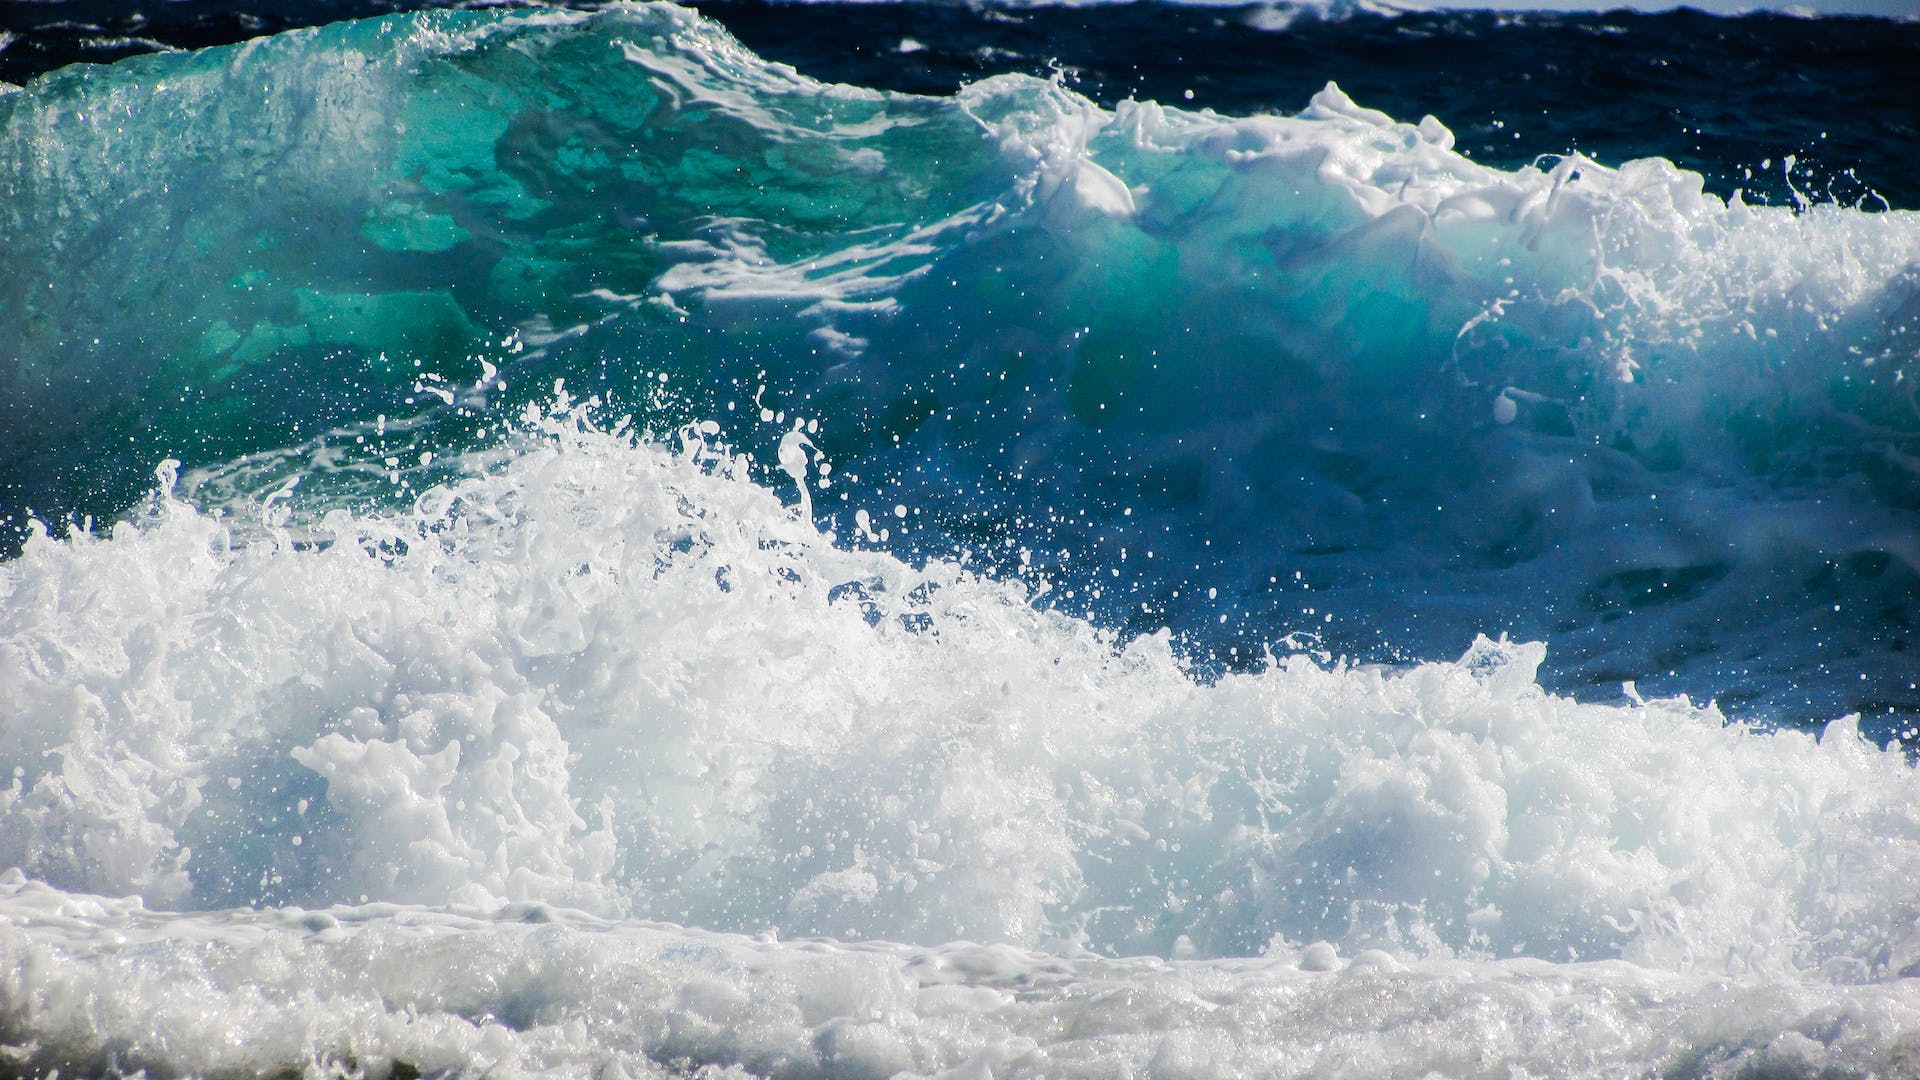 Eco Wave Power desarrolló una tecnología innovadora para la producción de electricidad limpia a partir de las olas del océano y del mar. Foto: Pixabay/Pexels.